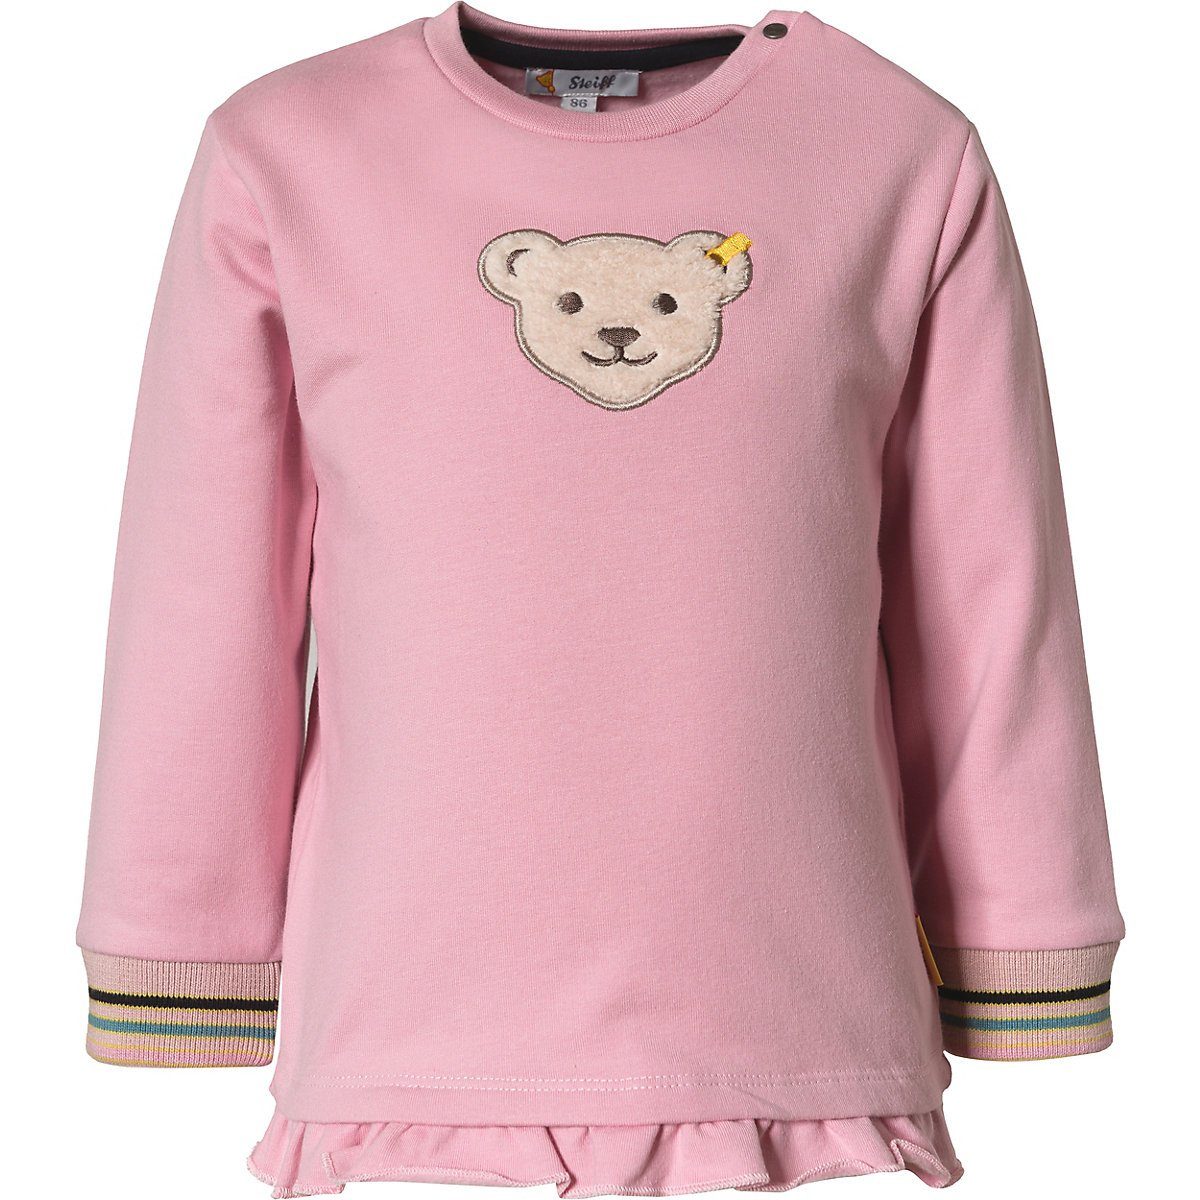 Kinder Sweater Steiff Sweatshirt Baby Sweatshirt für Mädchen